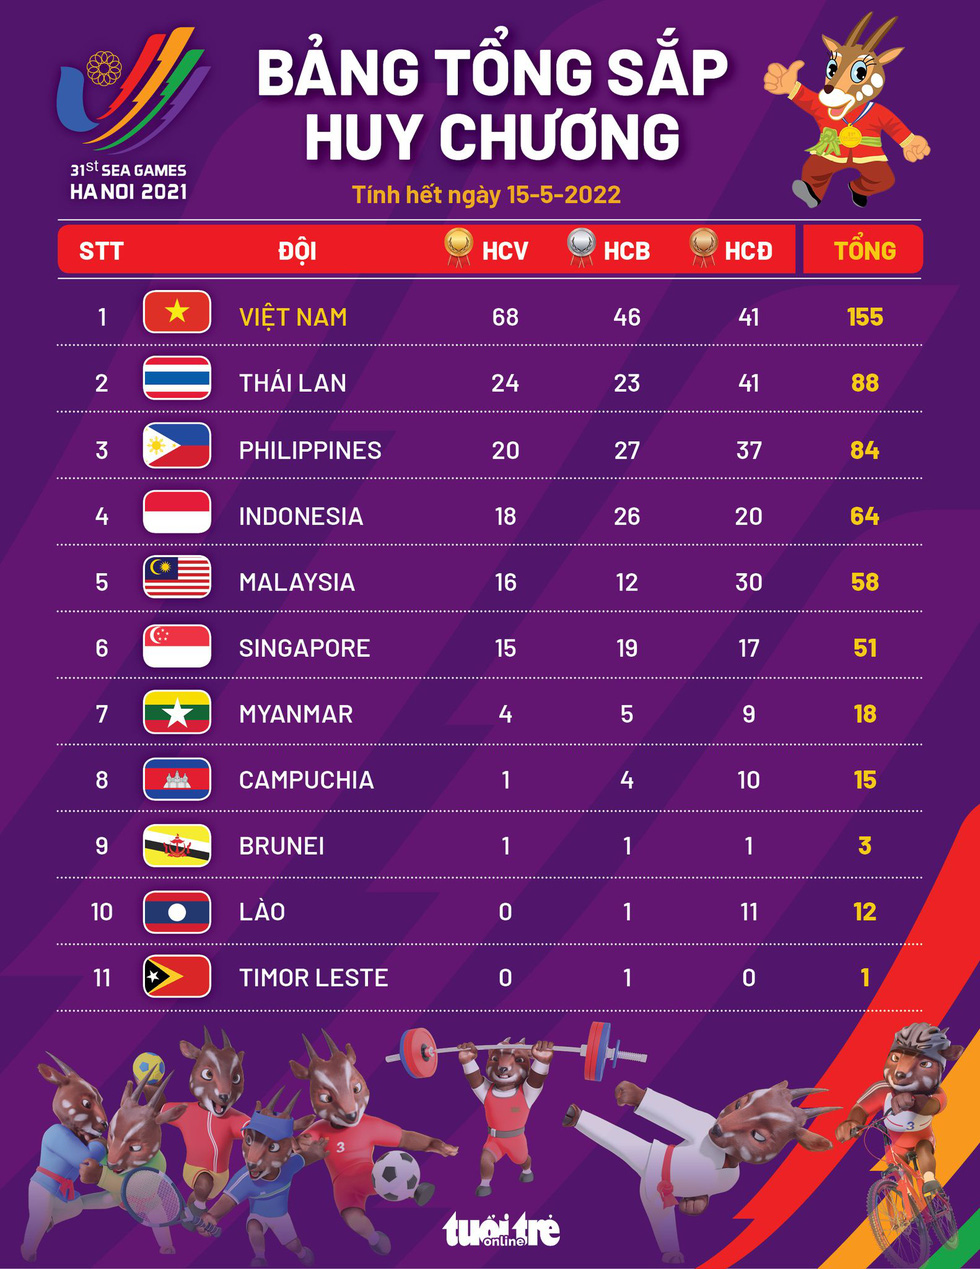 Bảng tổng sắp huy chương SEA Games 31 ngày 15-5: Việt Nam bỏ quá xa các đoàn phía sau - Ảnh 1.